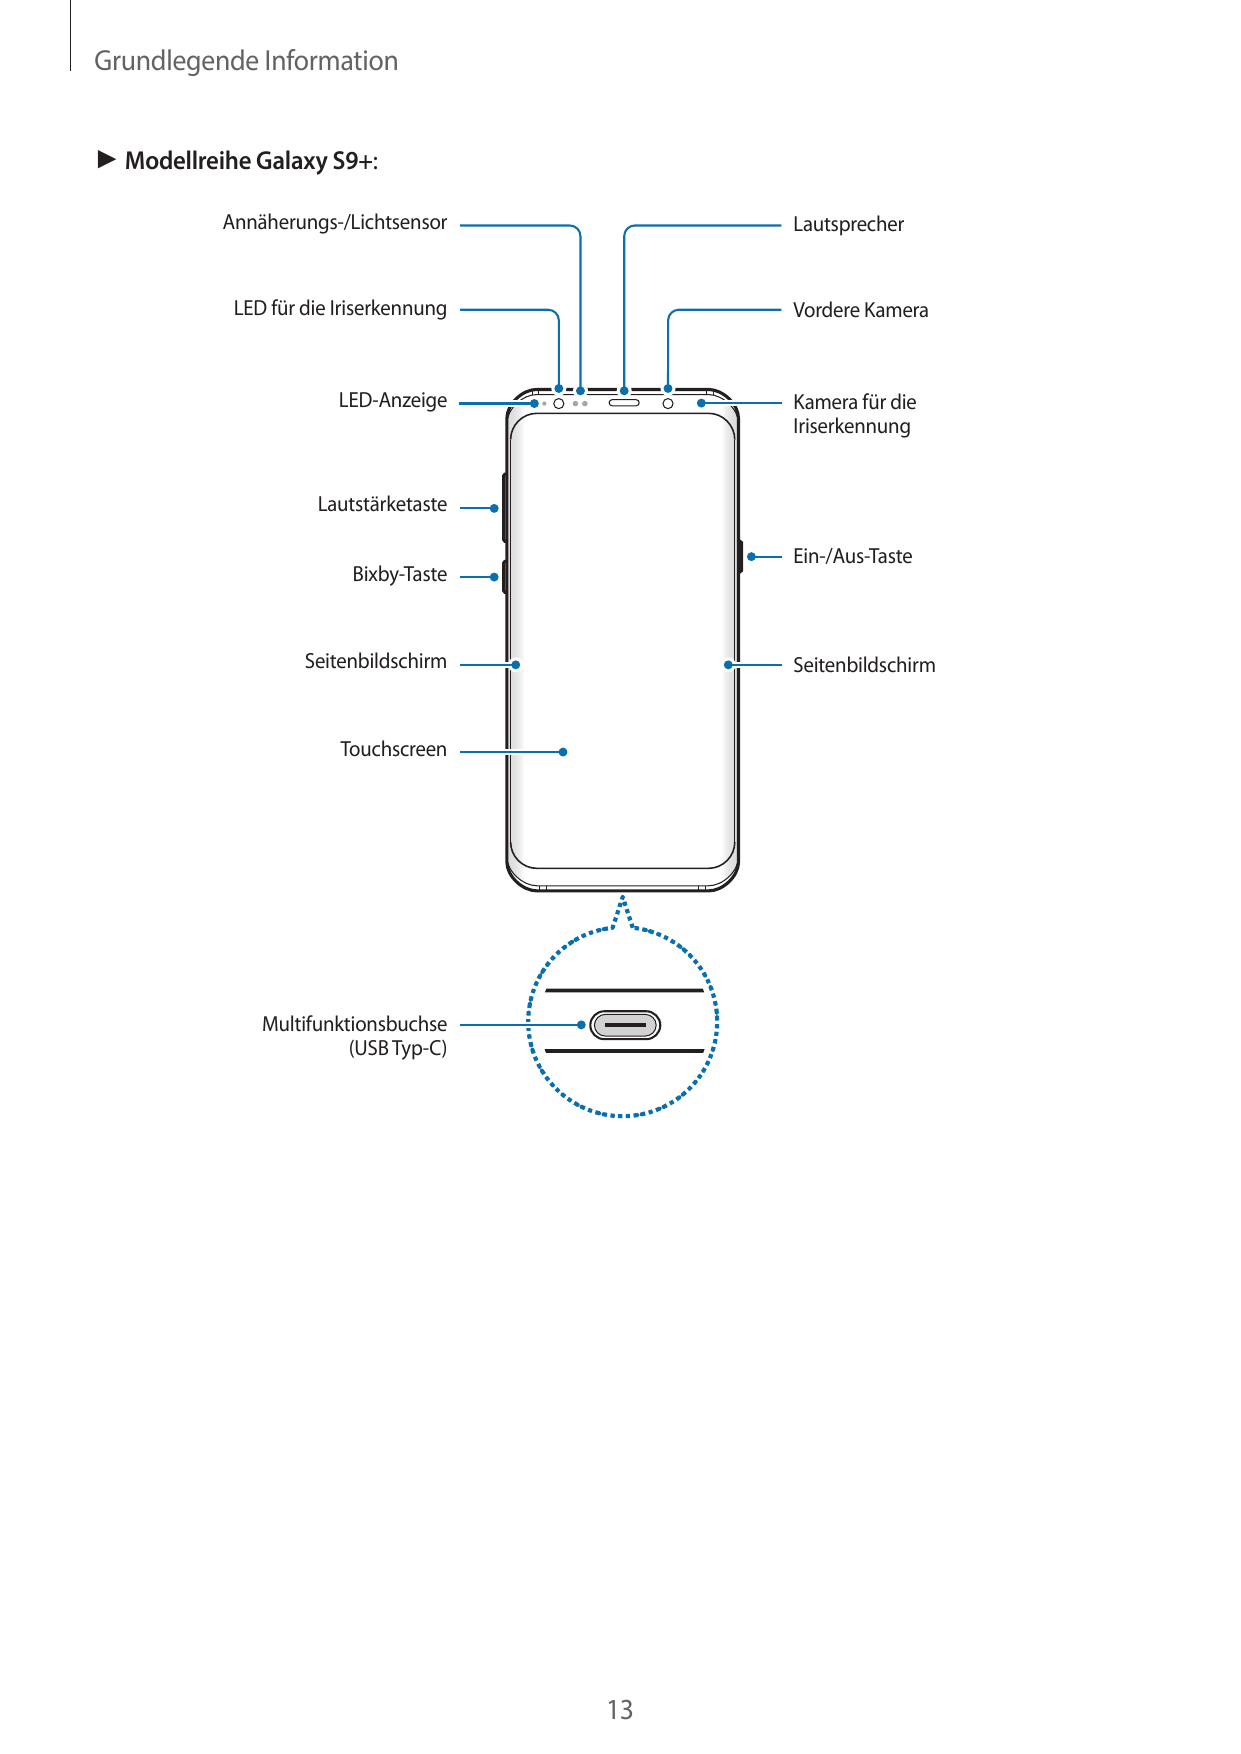 Grundlegende Information► Modellreihe Galaxy S9+:Annäherungs-/LichtsensorLautsprecherLED für die IriserkennungVordere KameraLED-